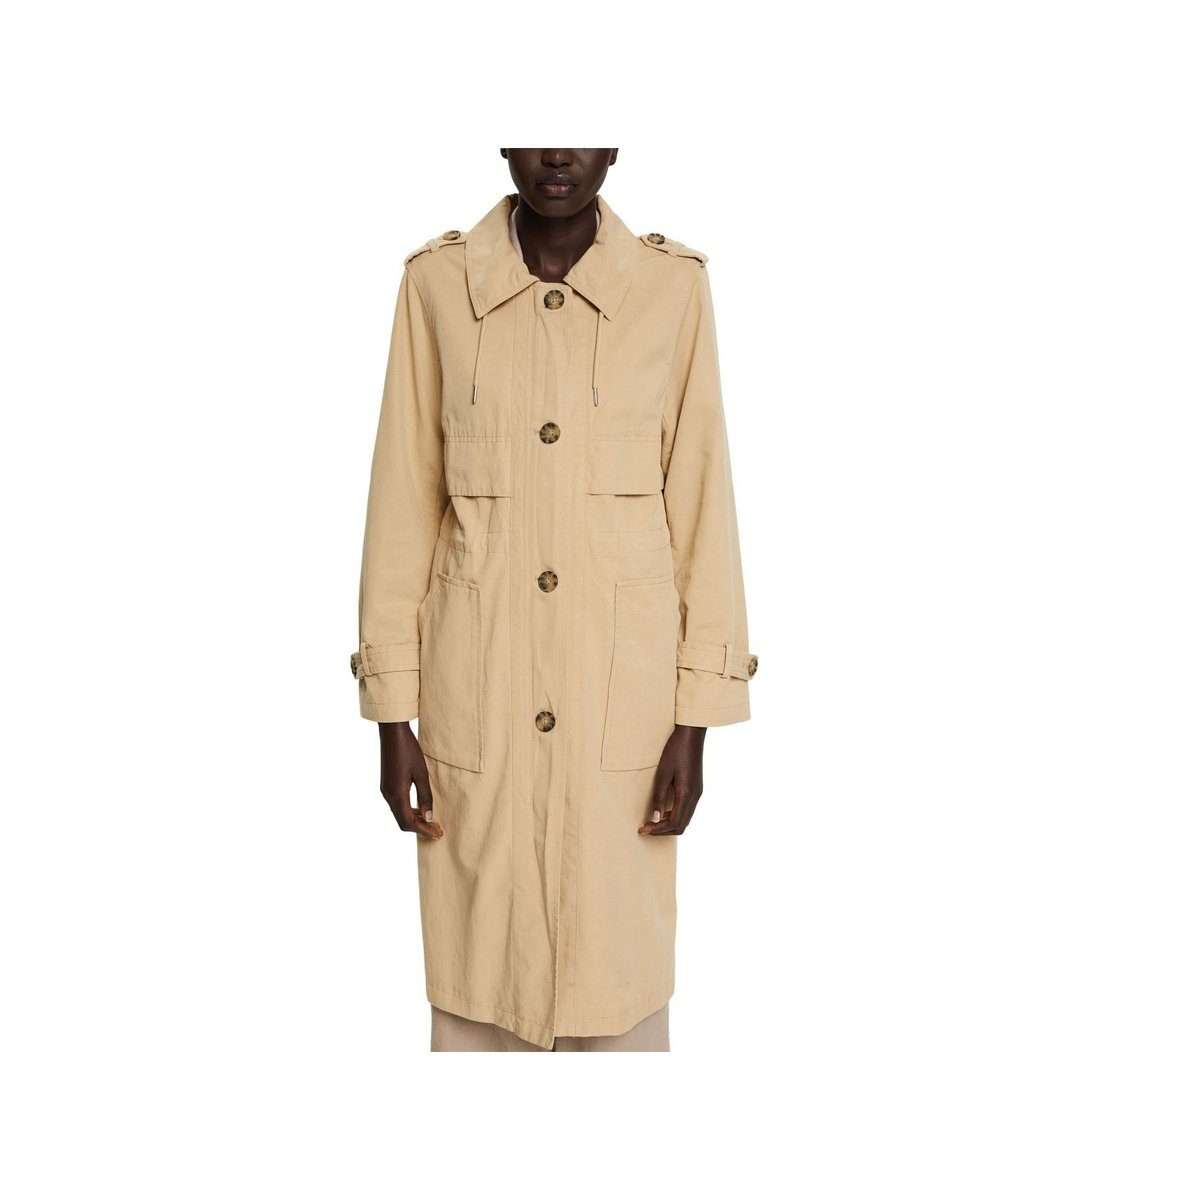 Короткое пальто песочного цвета стандартного кроя (1 шт.)